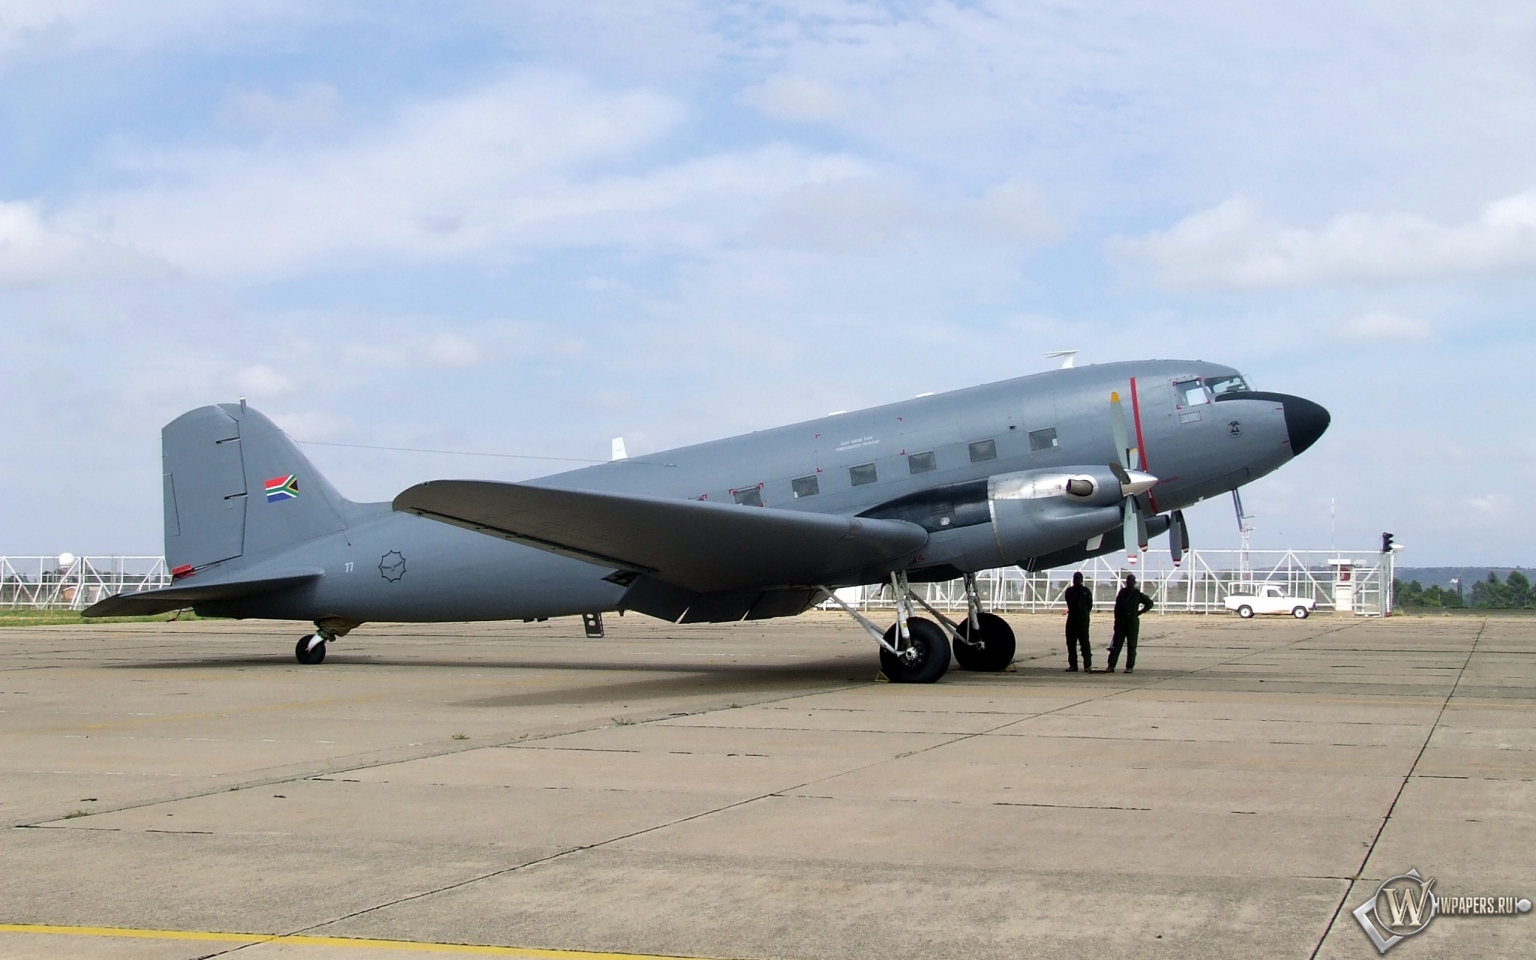 Douglas C-47 1536x960